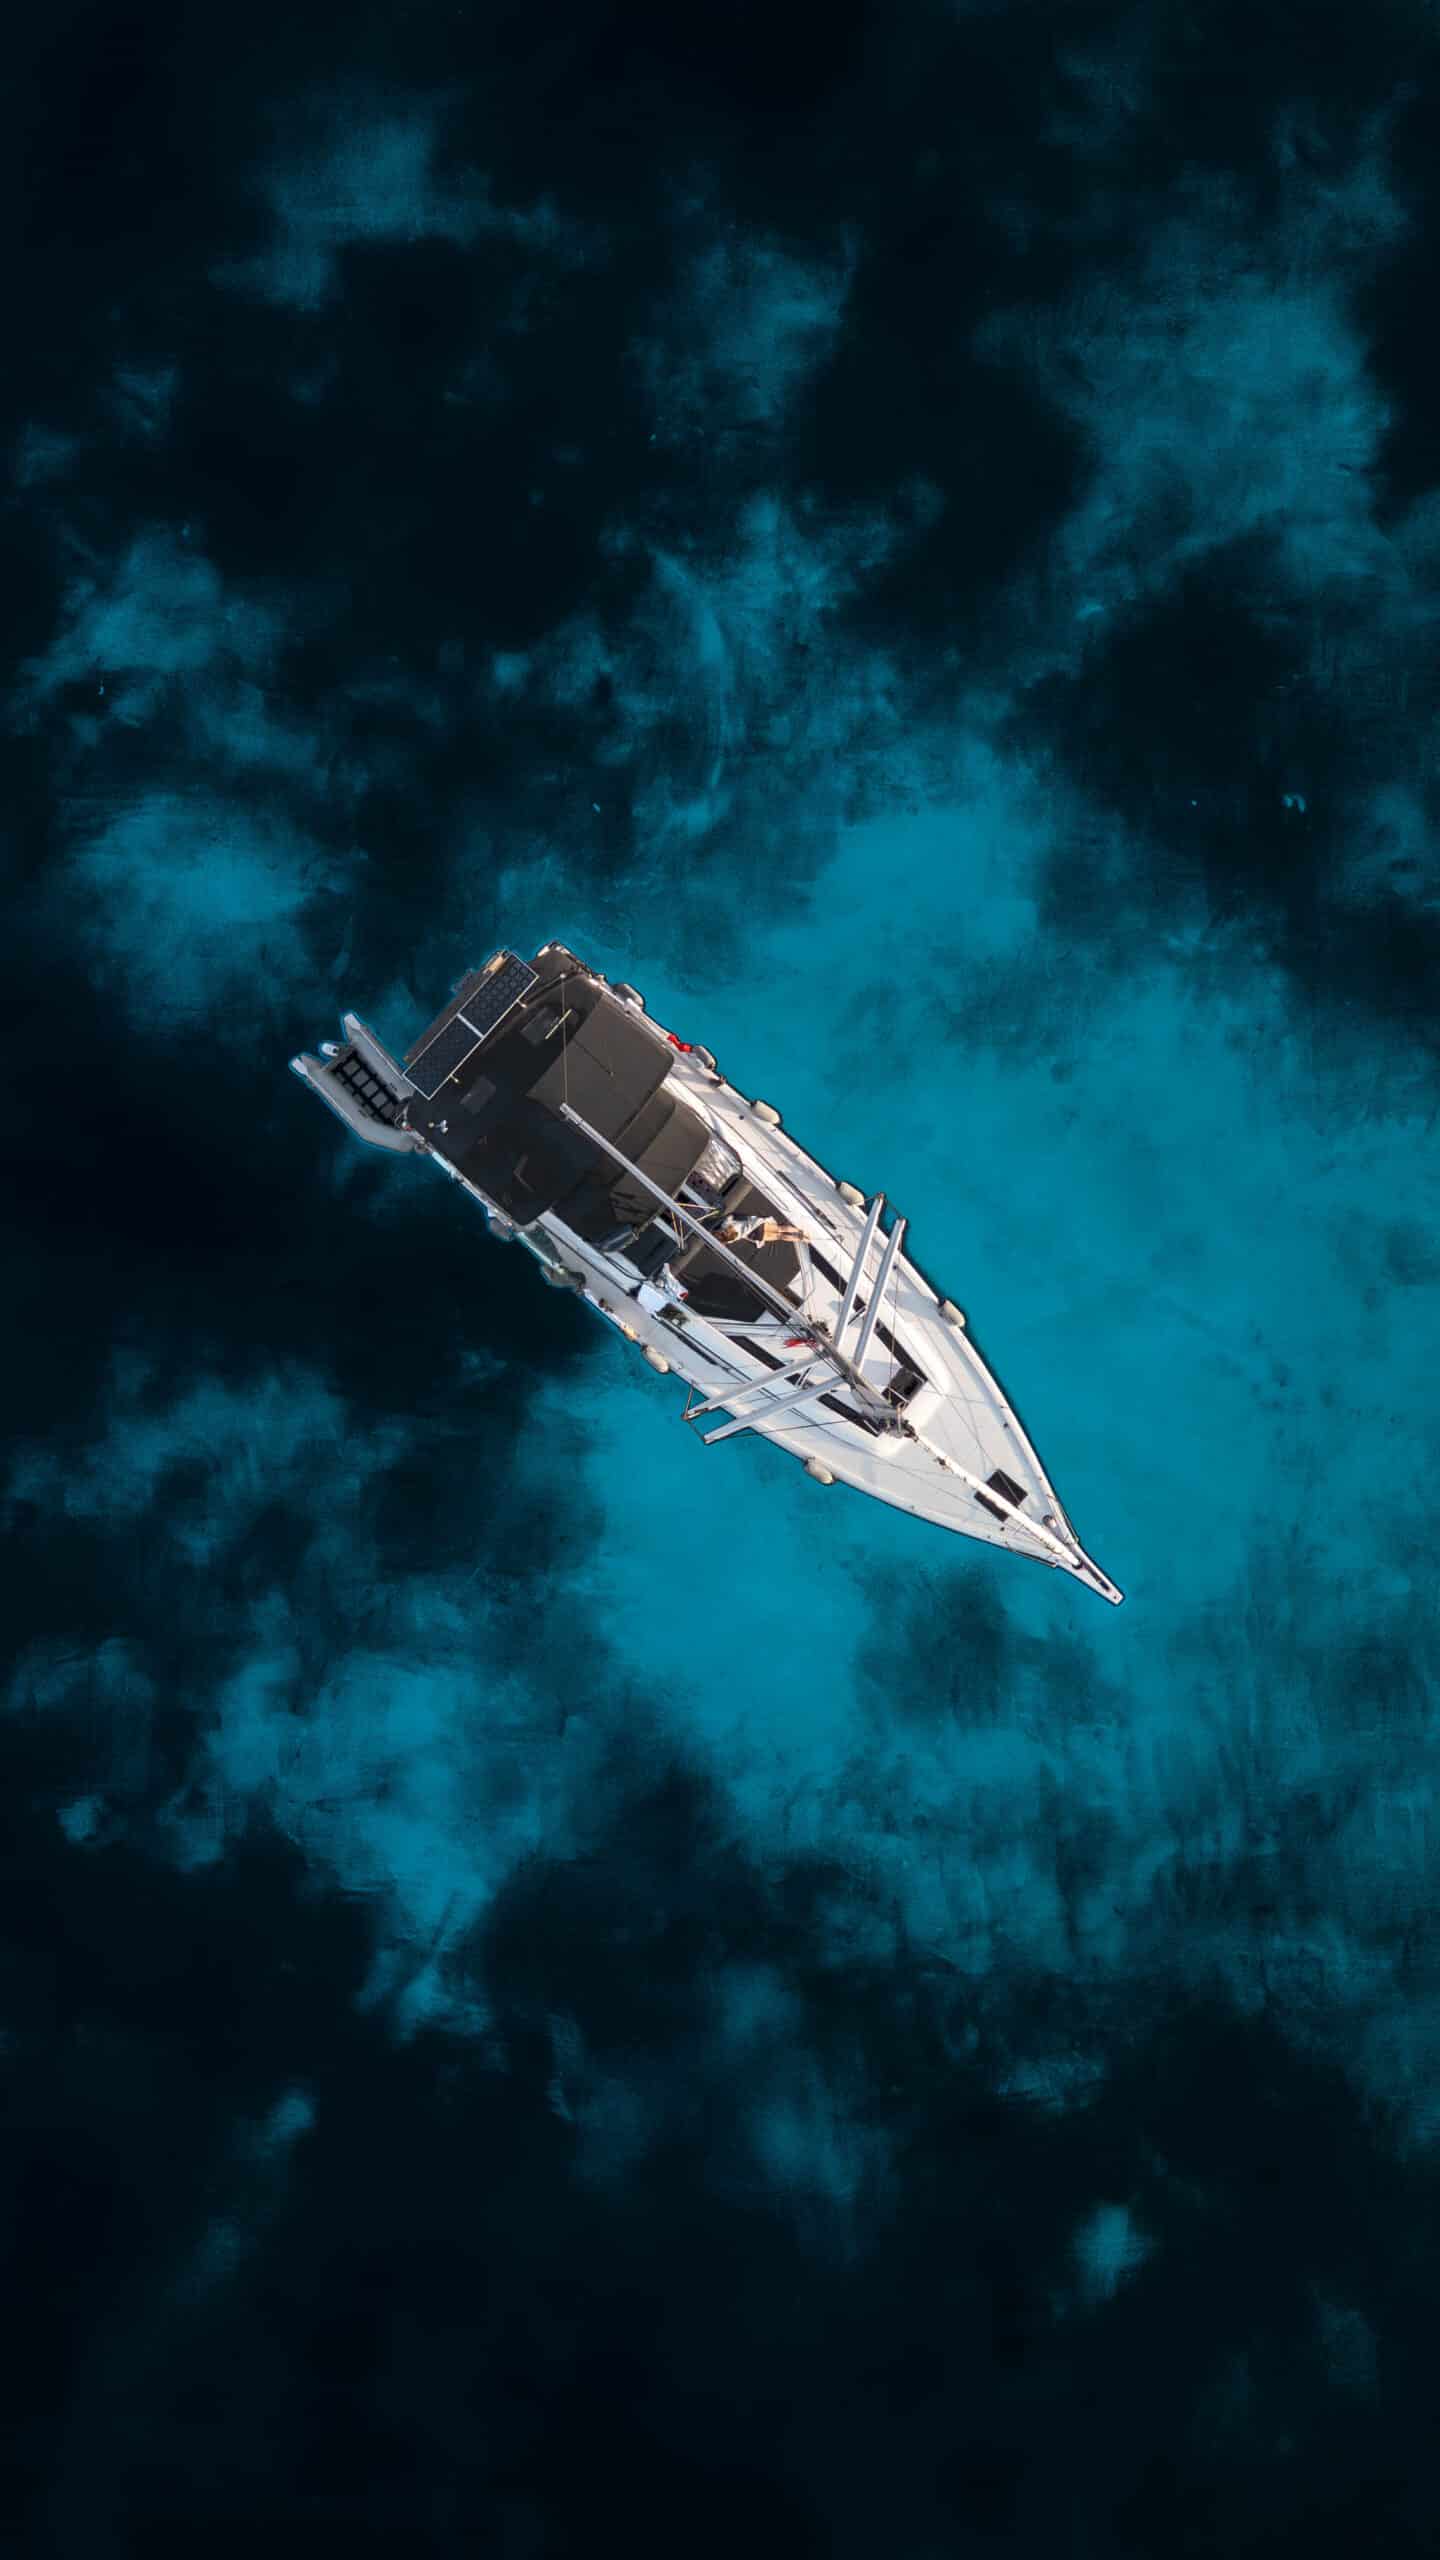 Eine Vogelperspektive eines weißen Segelboots mit dunklem Deck, das während einer Atlantiküberquerung durch leuchtend klares blaues Wasser segelt. Das Wasser um das Boot herum hat verschiedene Blautöne, was ein Gefühl von Tiefe und Bewegung vermittelt. Das Bild ist eindrucksvoll und heiter und fängt die Ruhe des offenen Meeres ein.